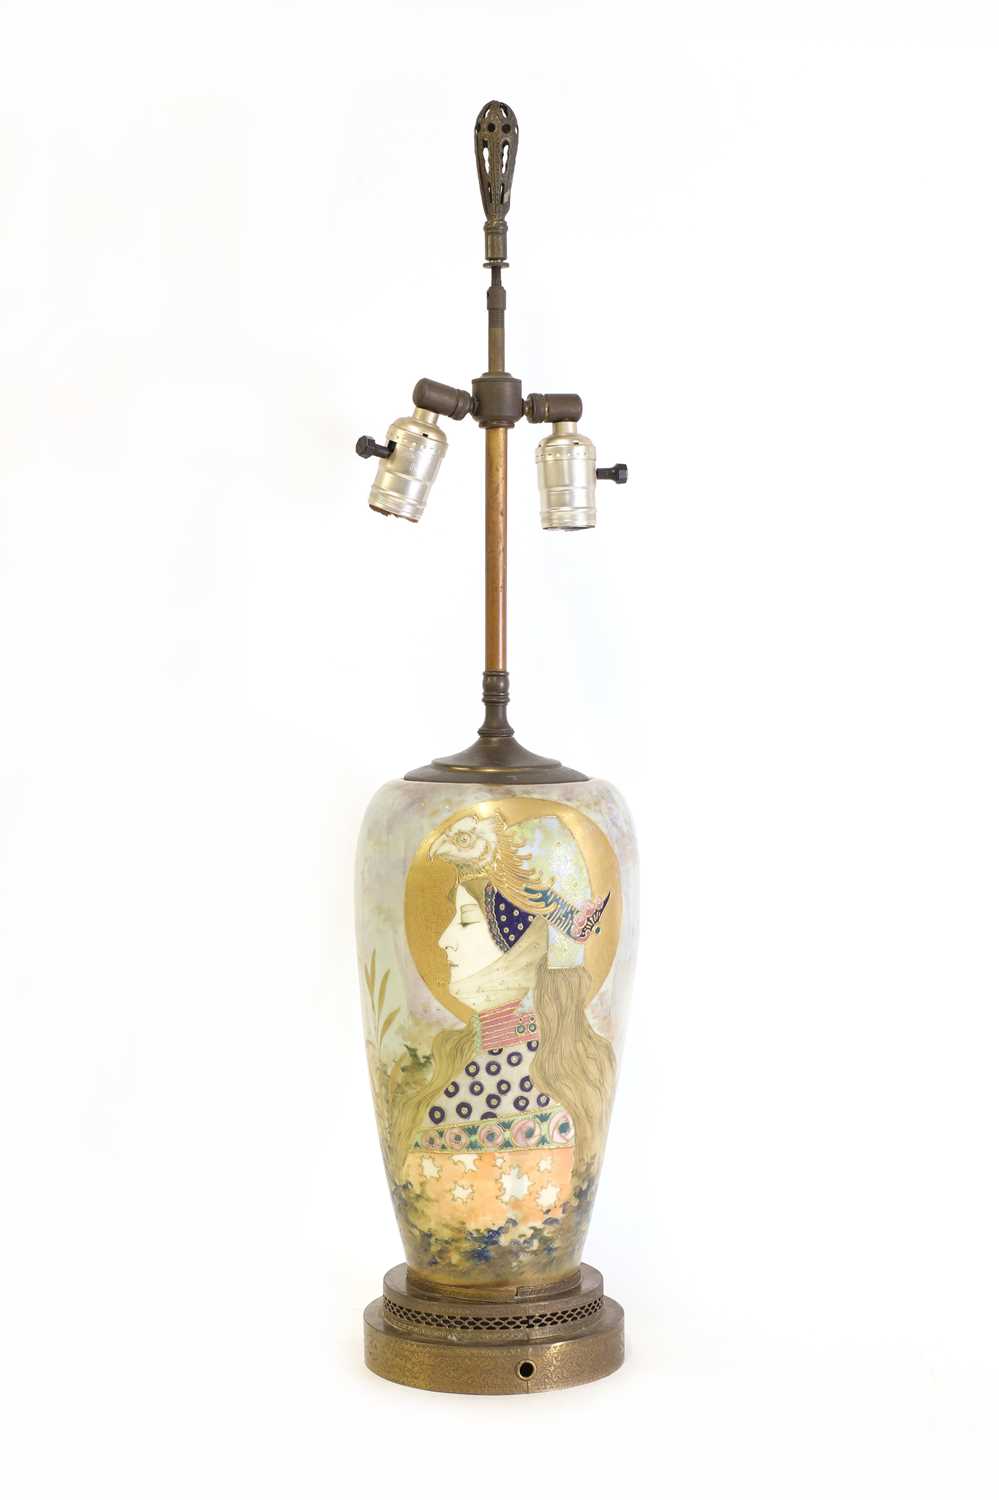 Lot 34 - An Art Nouveau 'Amphora' porcelain table lamp